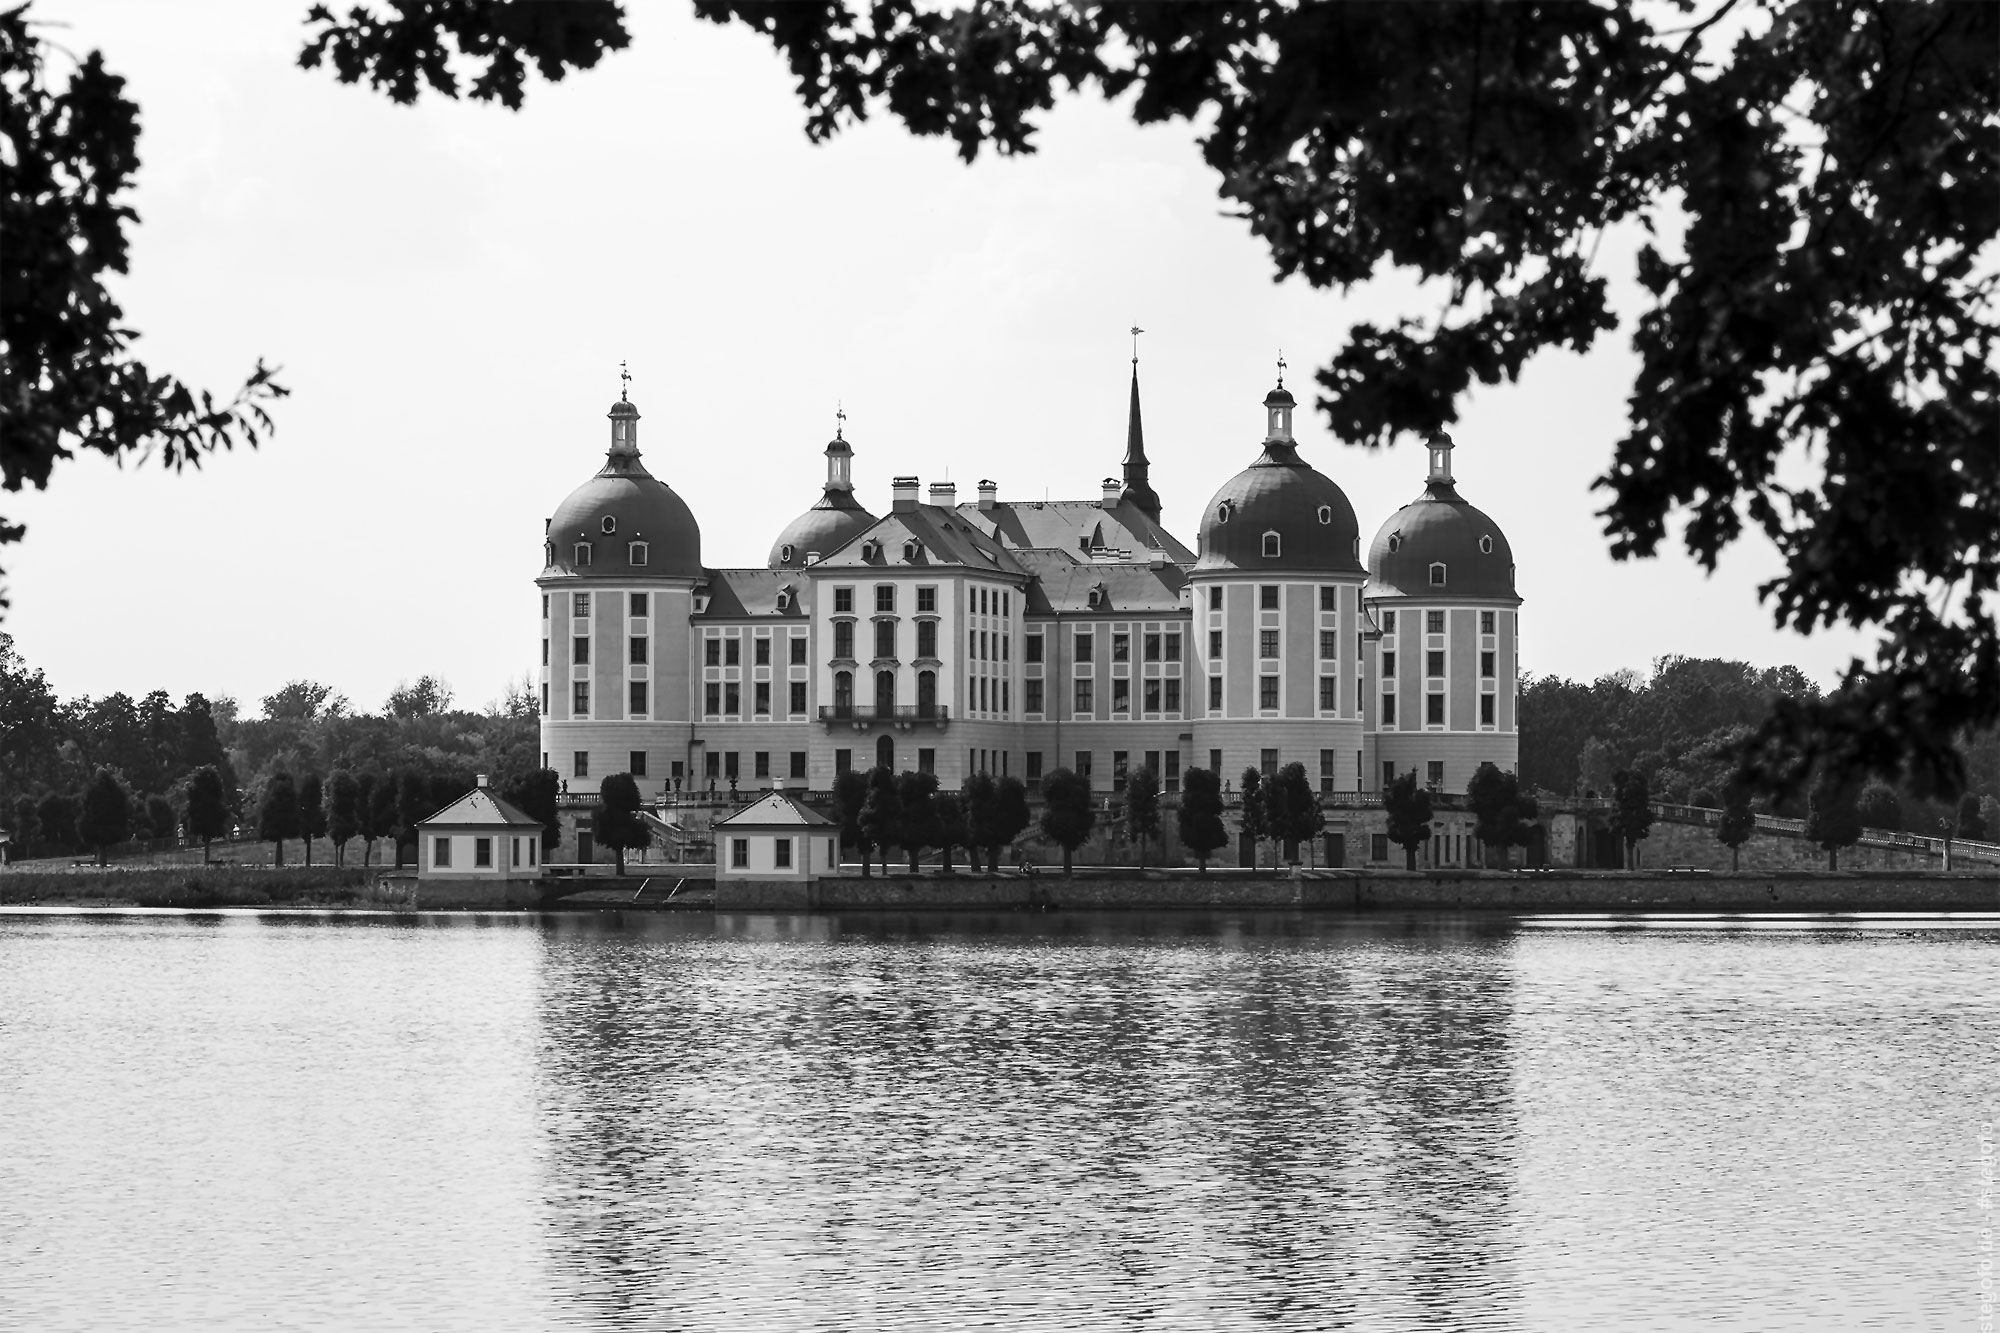 Das Schloss Moritzburg